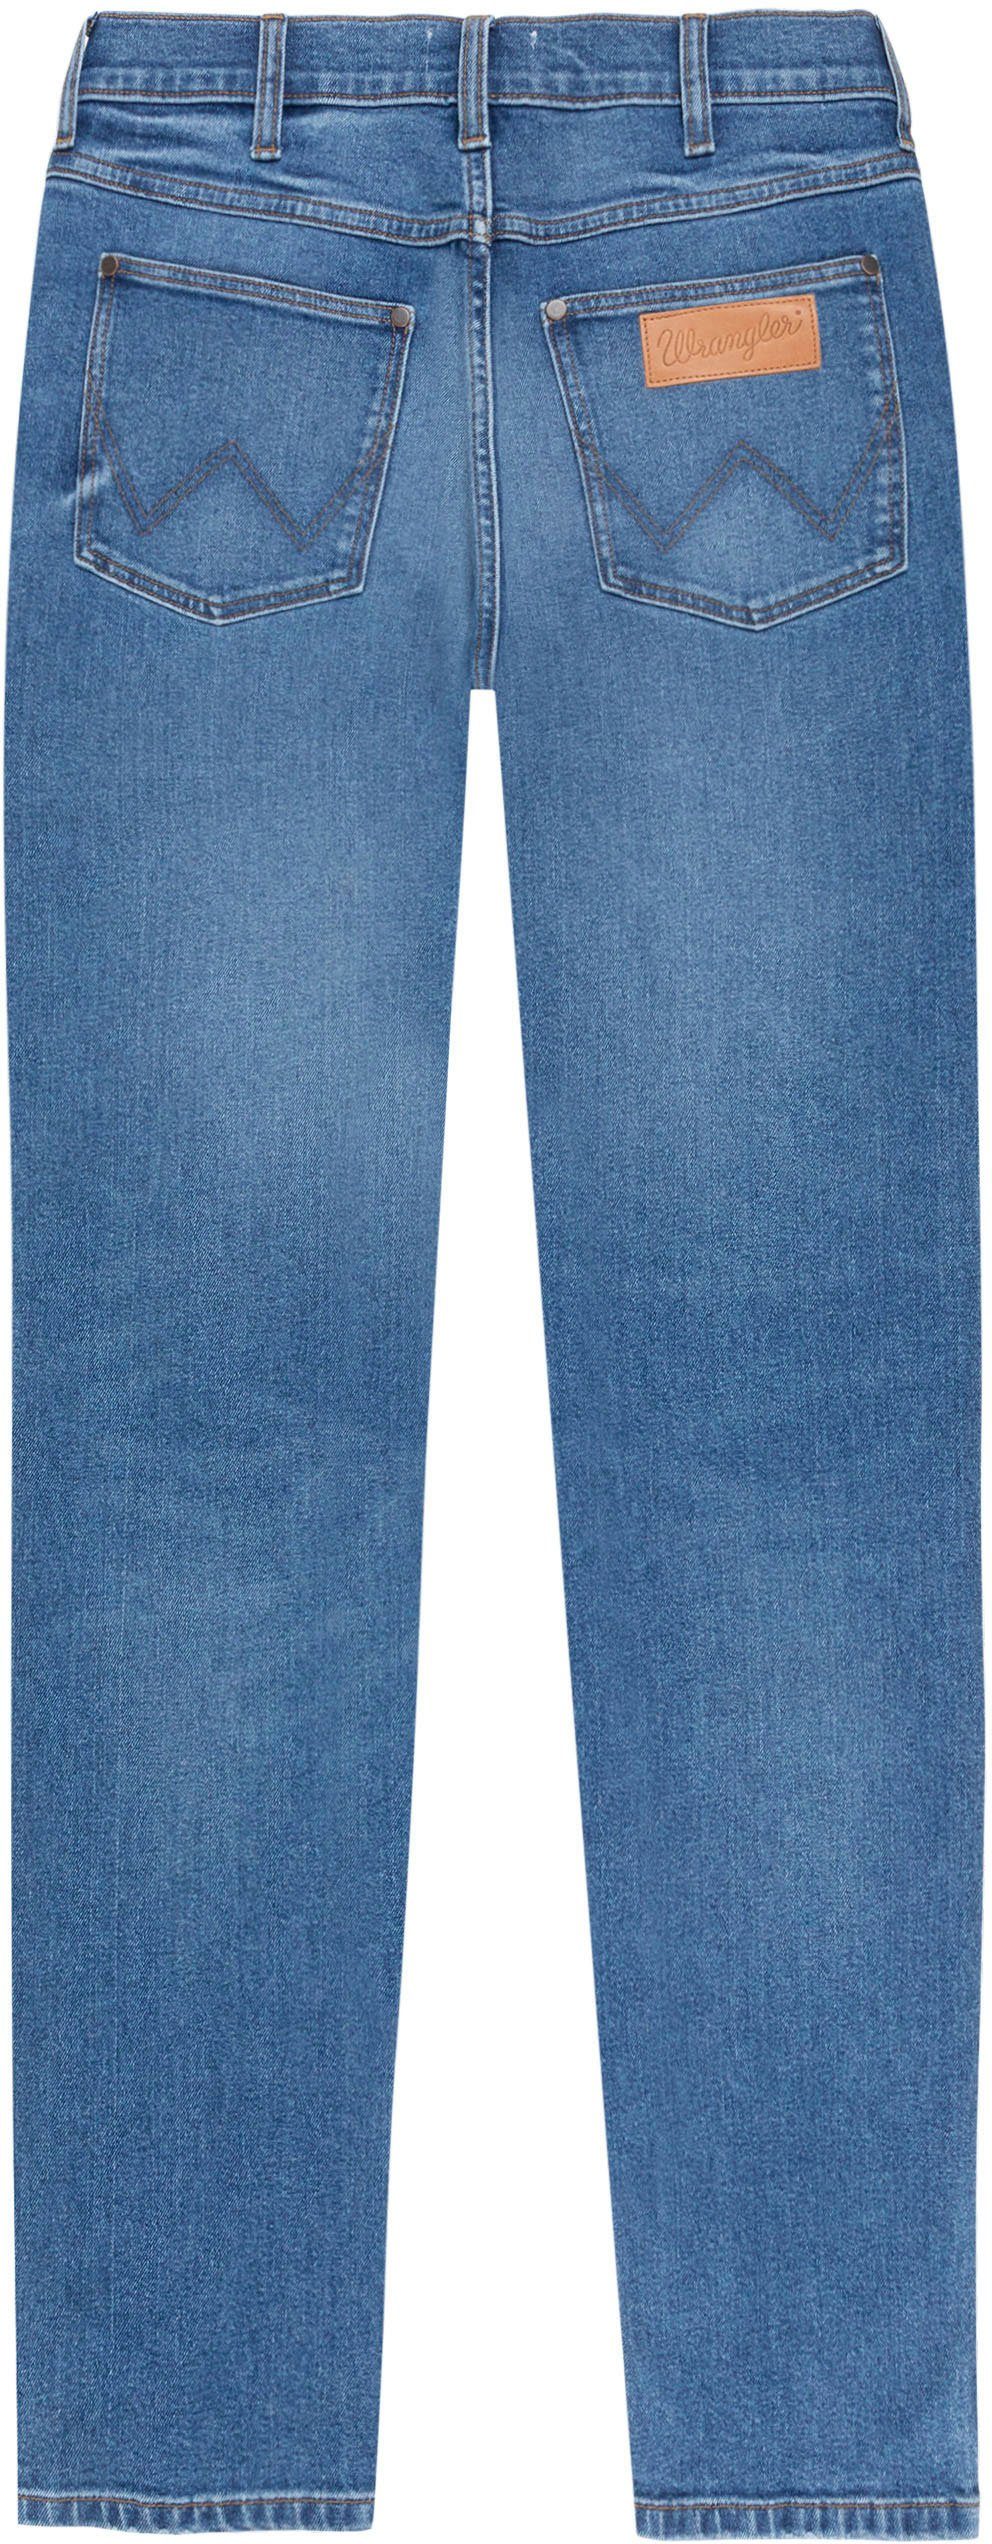 Wrangler 5-Pocket-Jeans sea smoke River